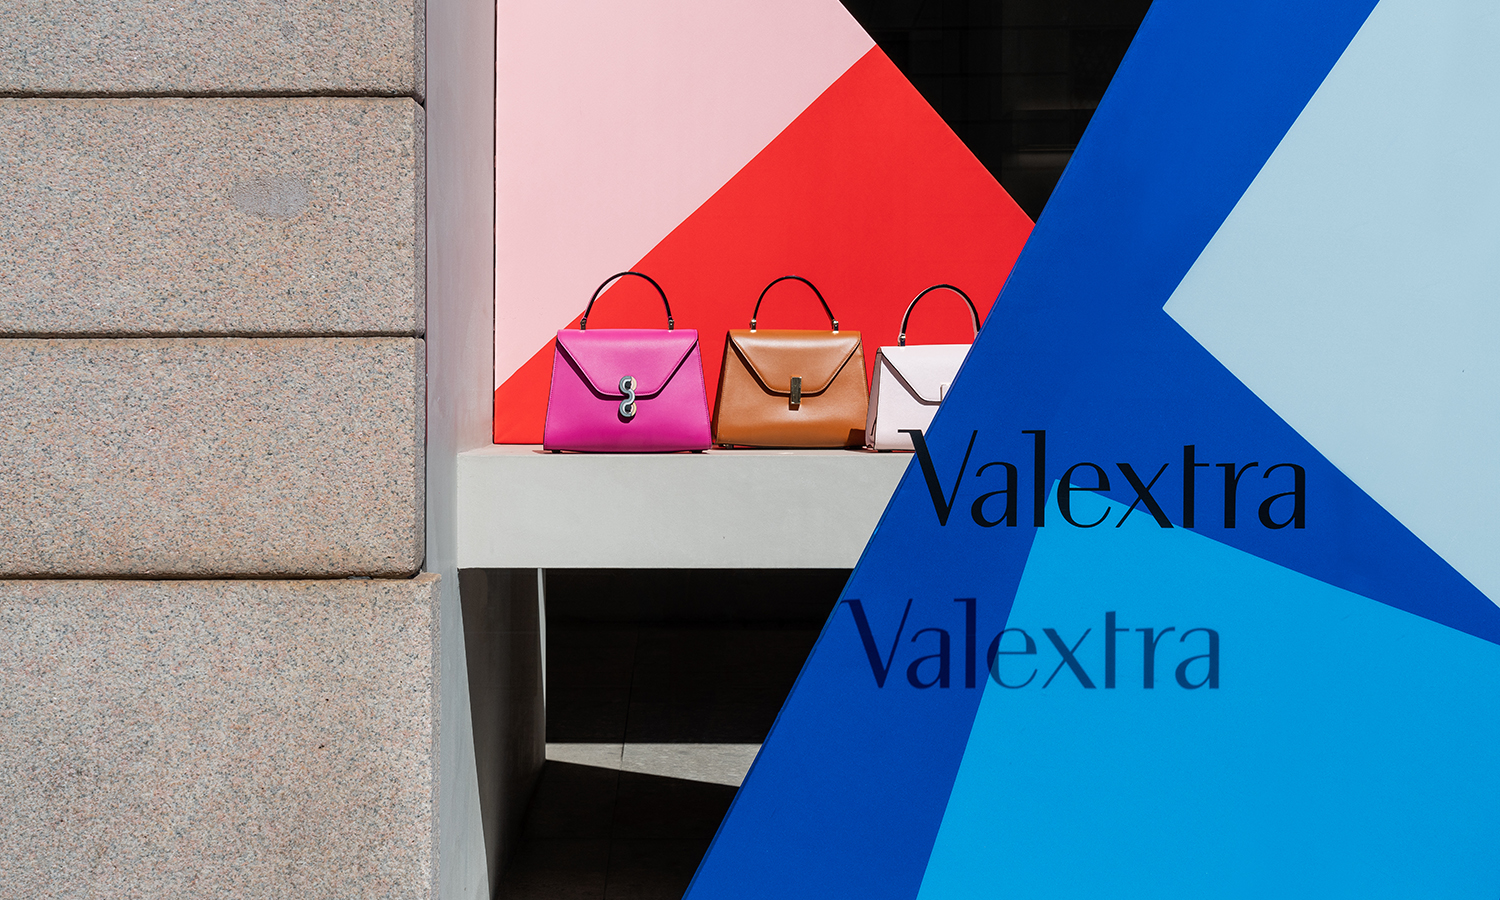 携手意大利丝绸面料品牌 Ratti，Valextra 推出 Sailing Through Times 米兰数字时装周项目